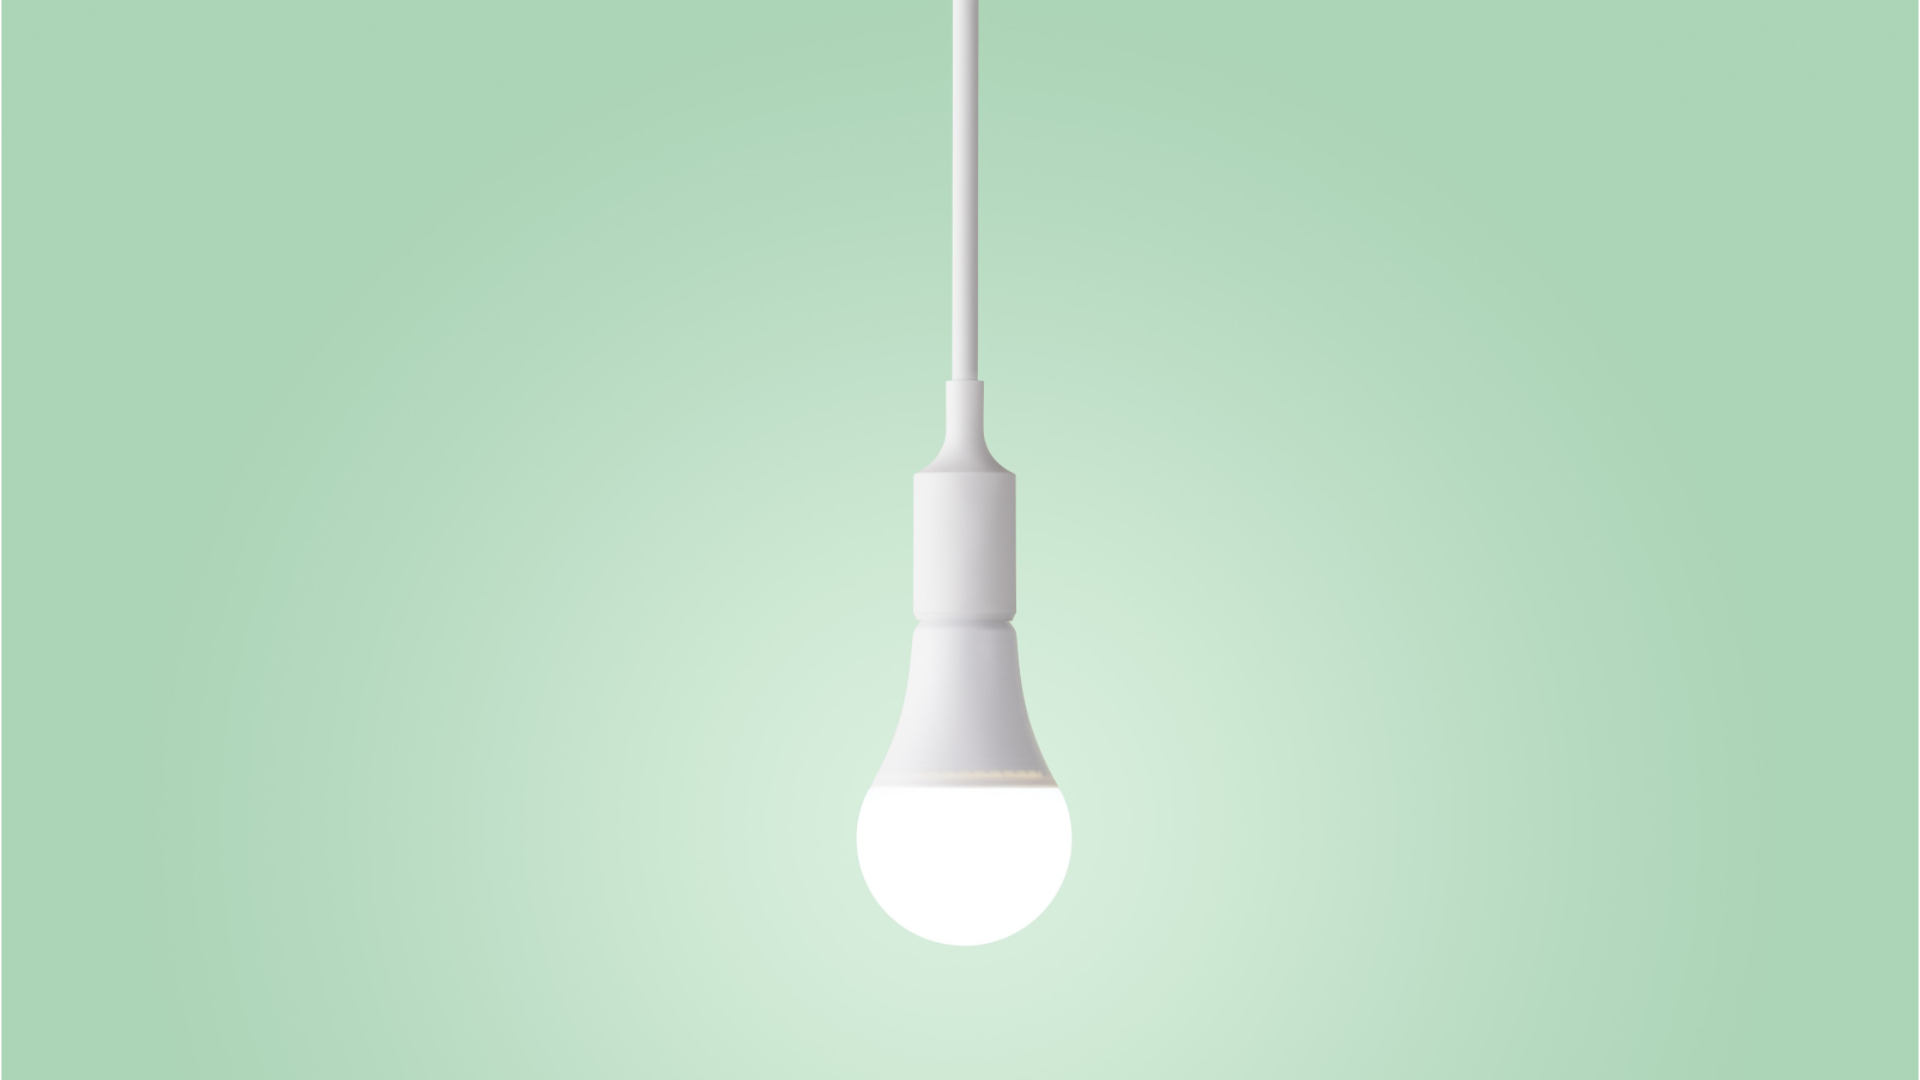 Trop gourmandes en électricité, les ampoules halogènes vont